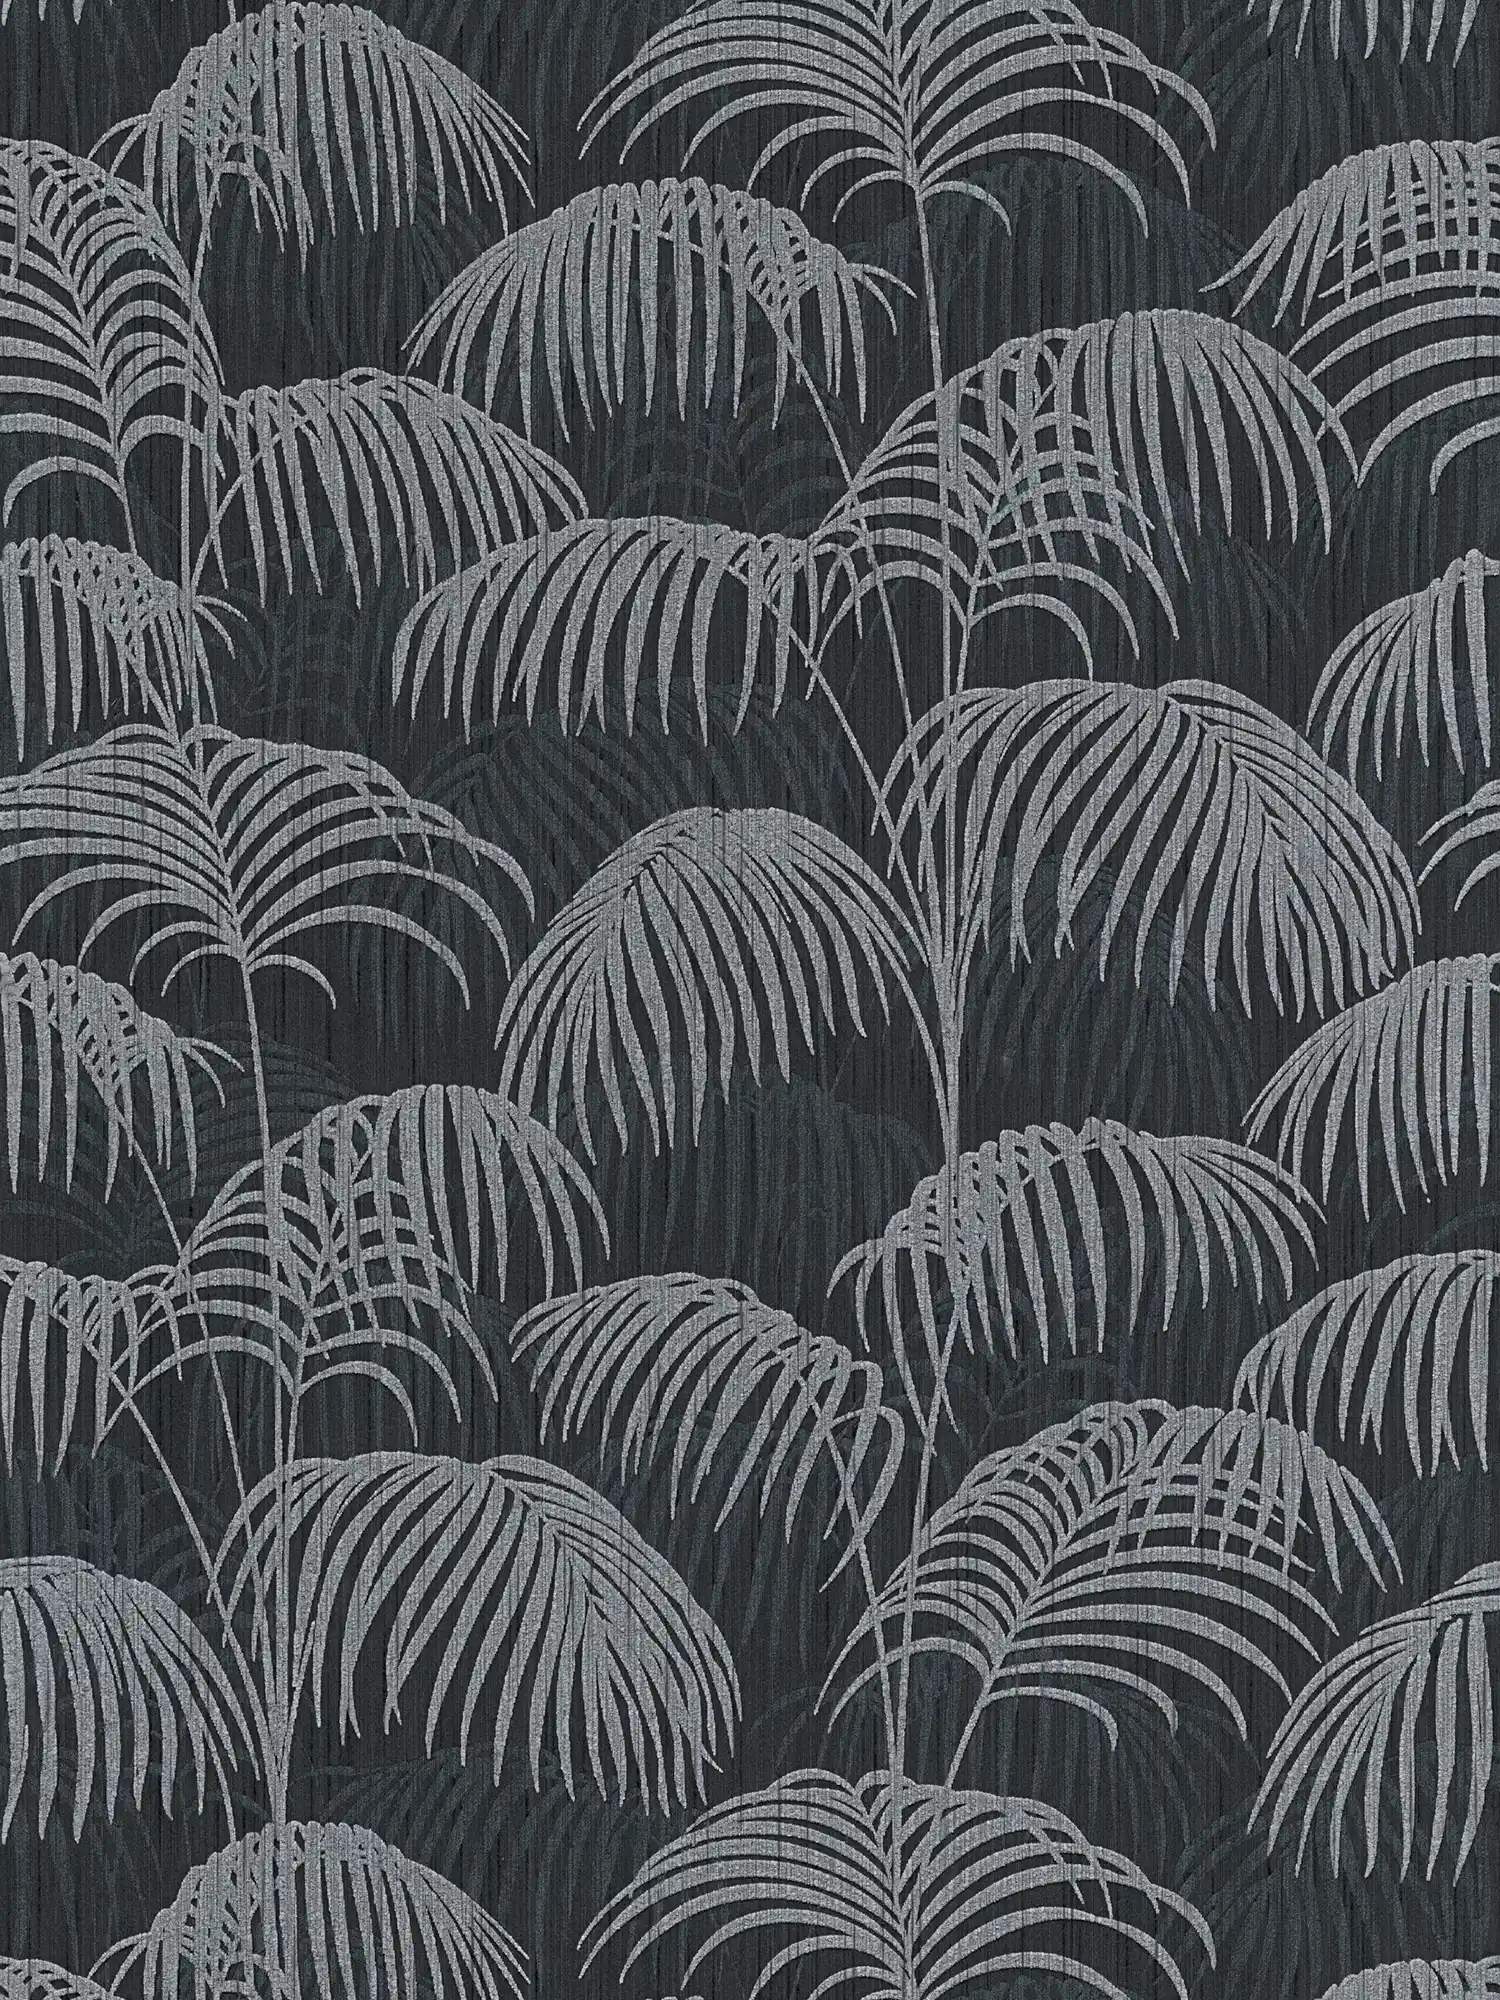 behang palmbladeren natuurpatroon met dieptewerking - grijs, zwart
